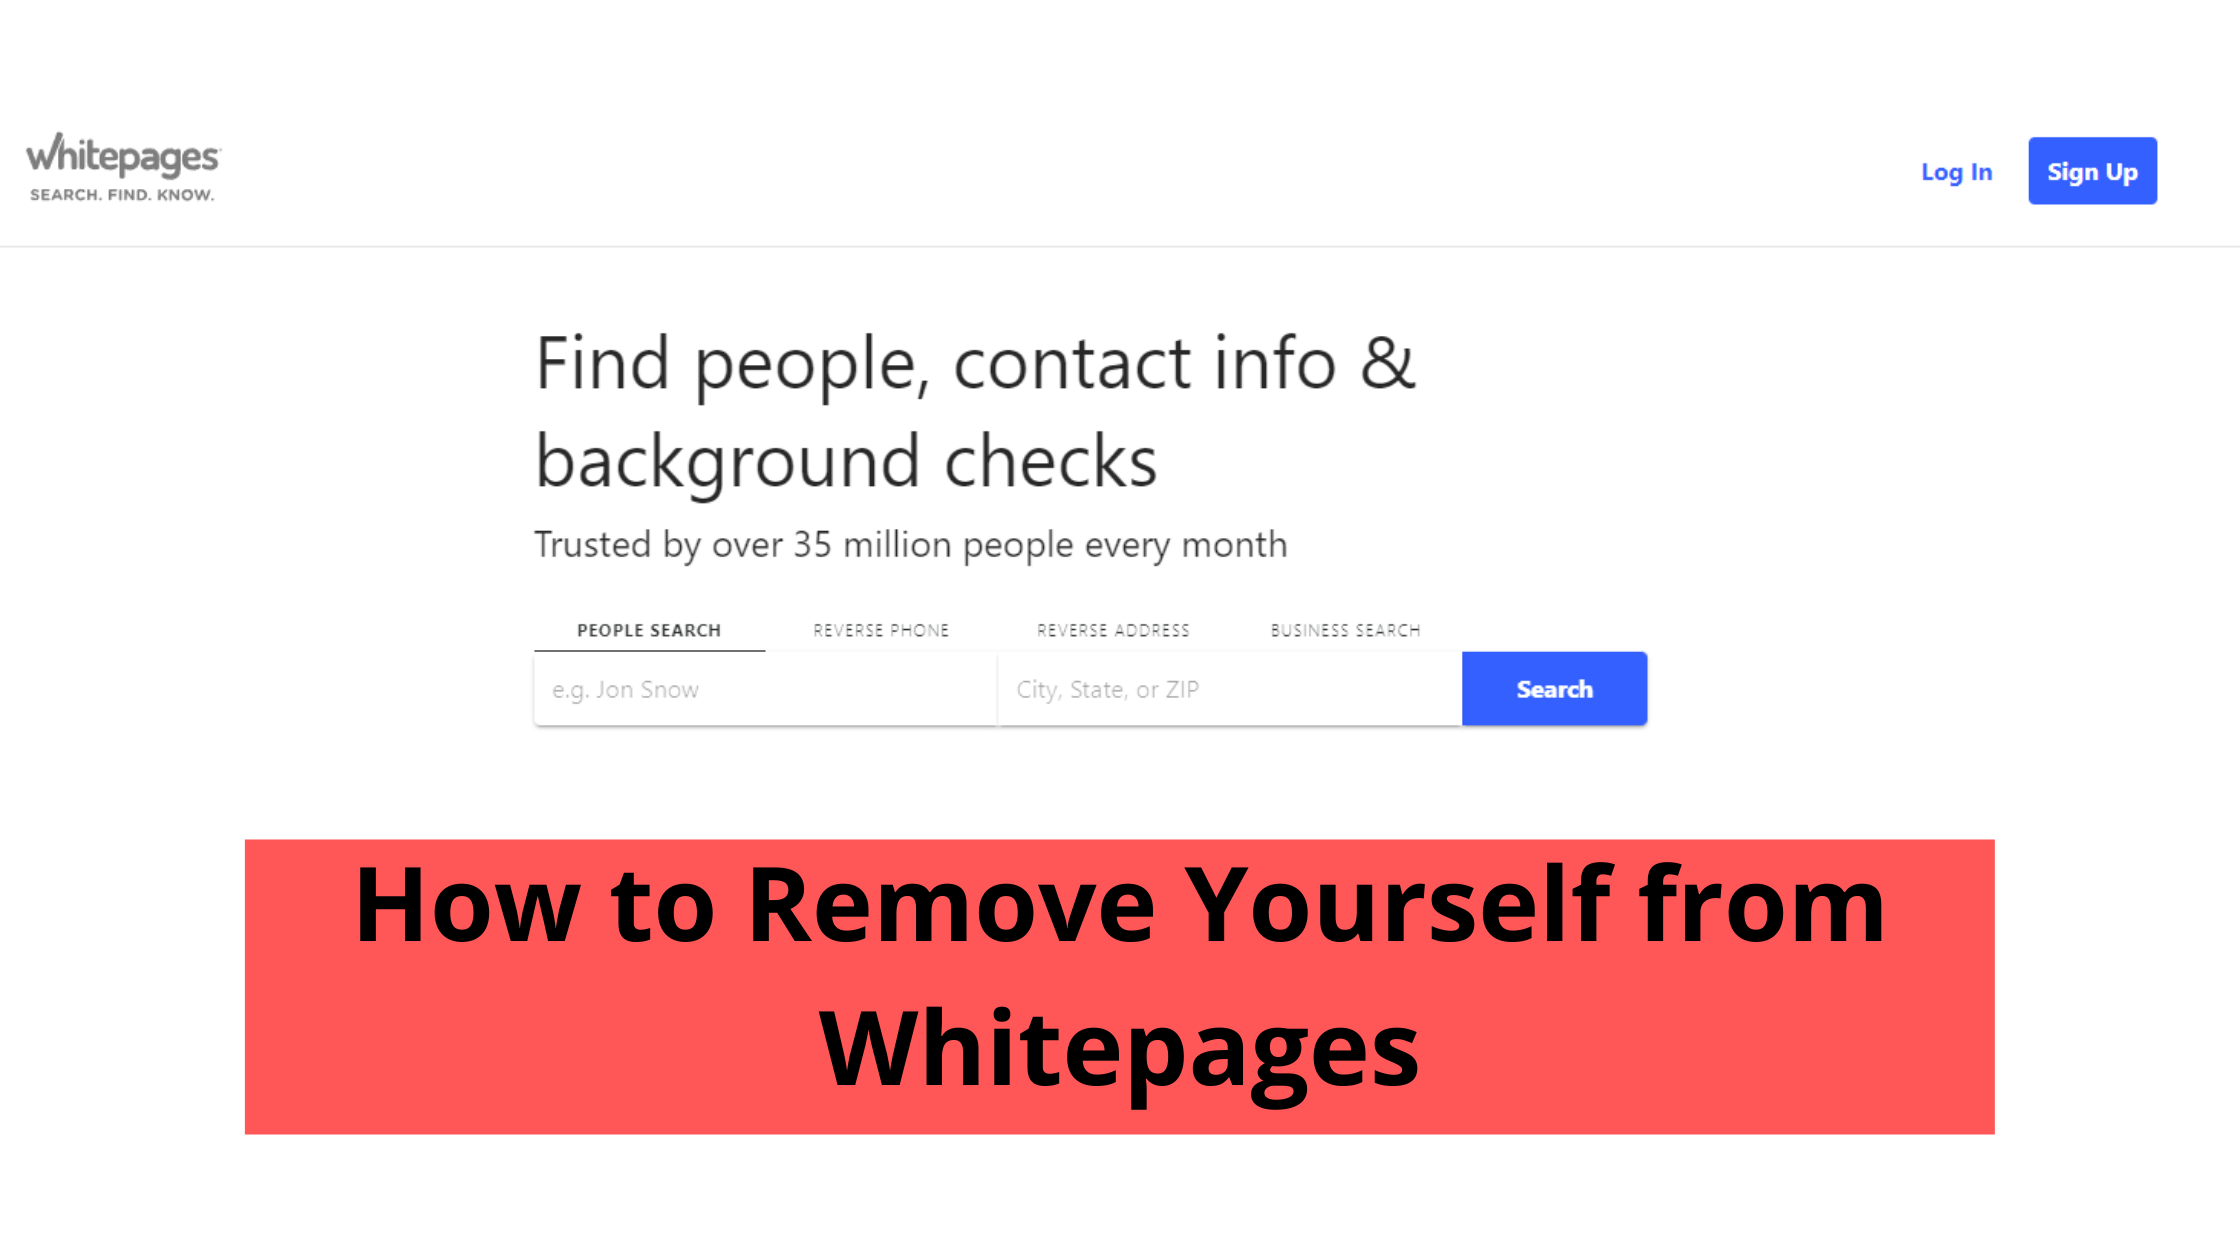 Bạn muốn bảo vệ thông tin cá nhân và không muốn nó xuất hiện trên Whitepages? Không cần phải lo lắng, bạn có thể sử dụng công cụ xóa thông tin cá nhân khỏi Whitepages miễn phí để loại bỏ thông tin của mình khỏi trang web này một cách nhanh chóng và đơn giản.